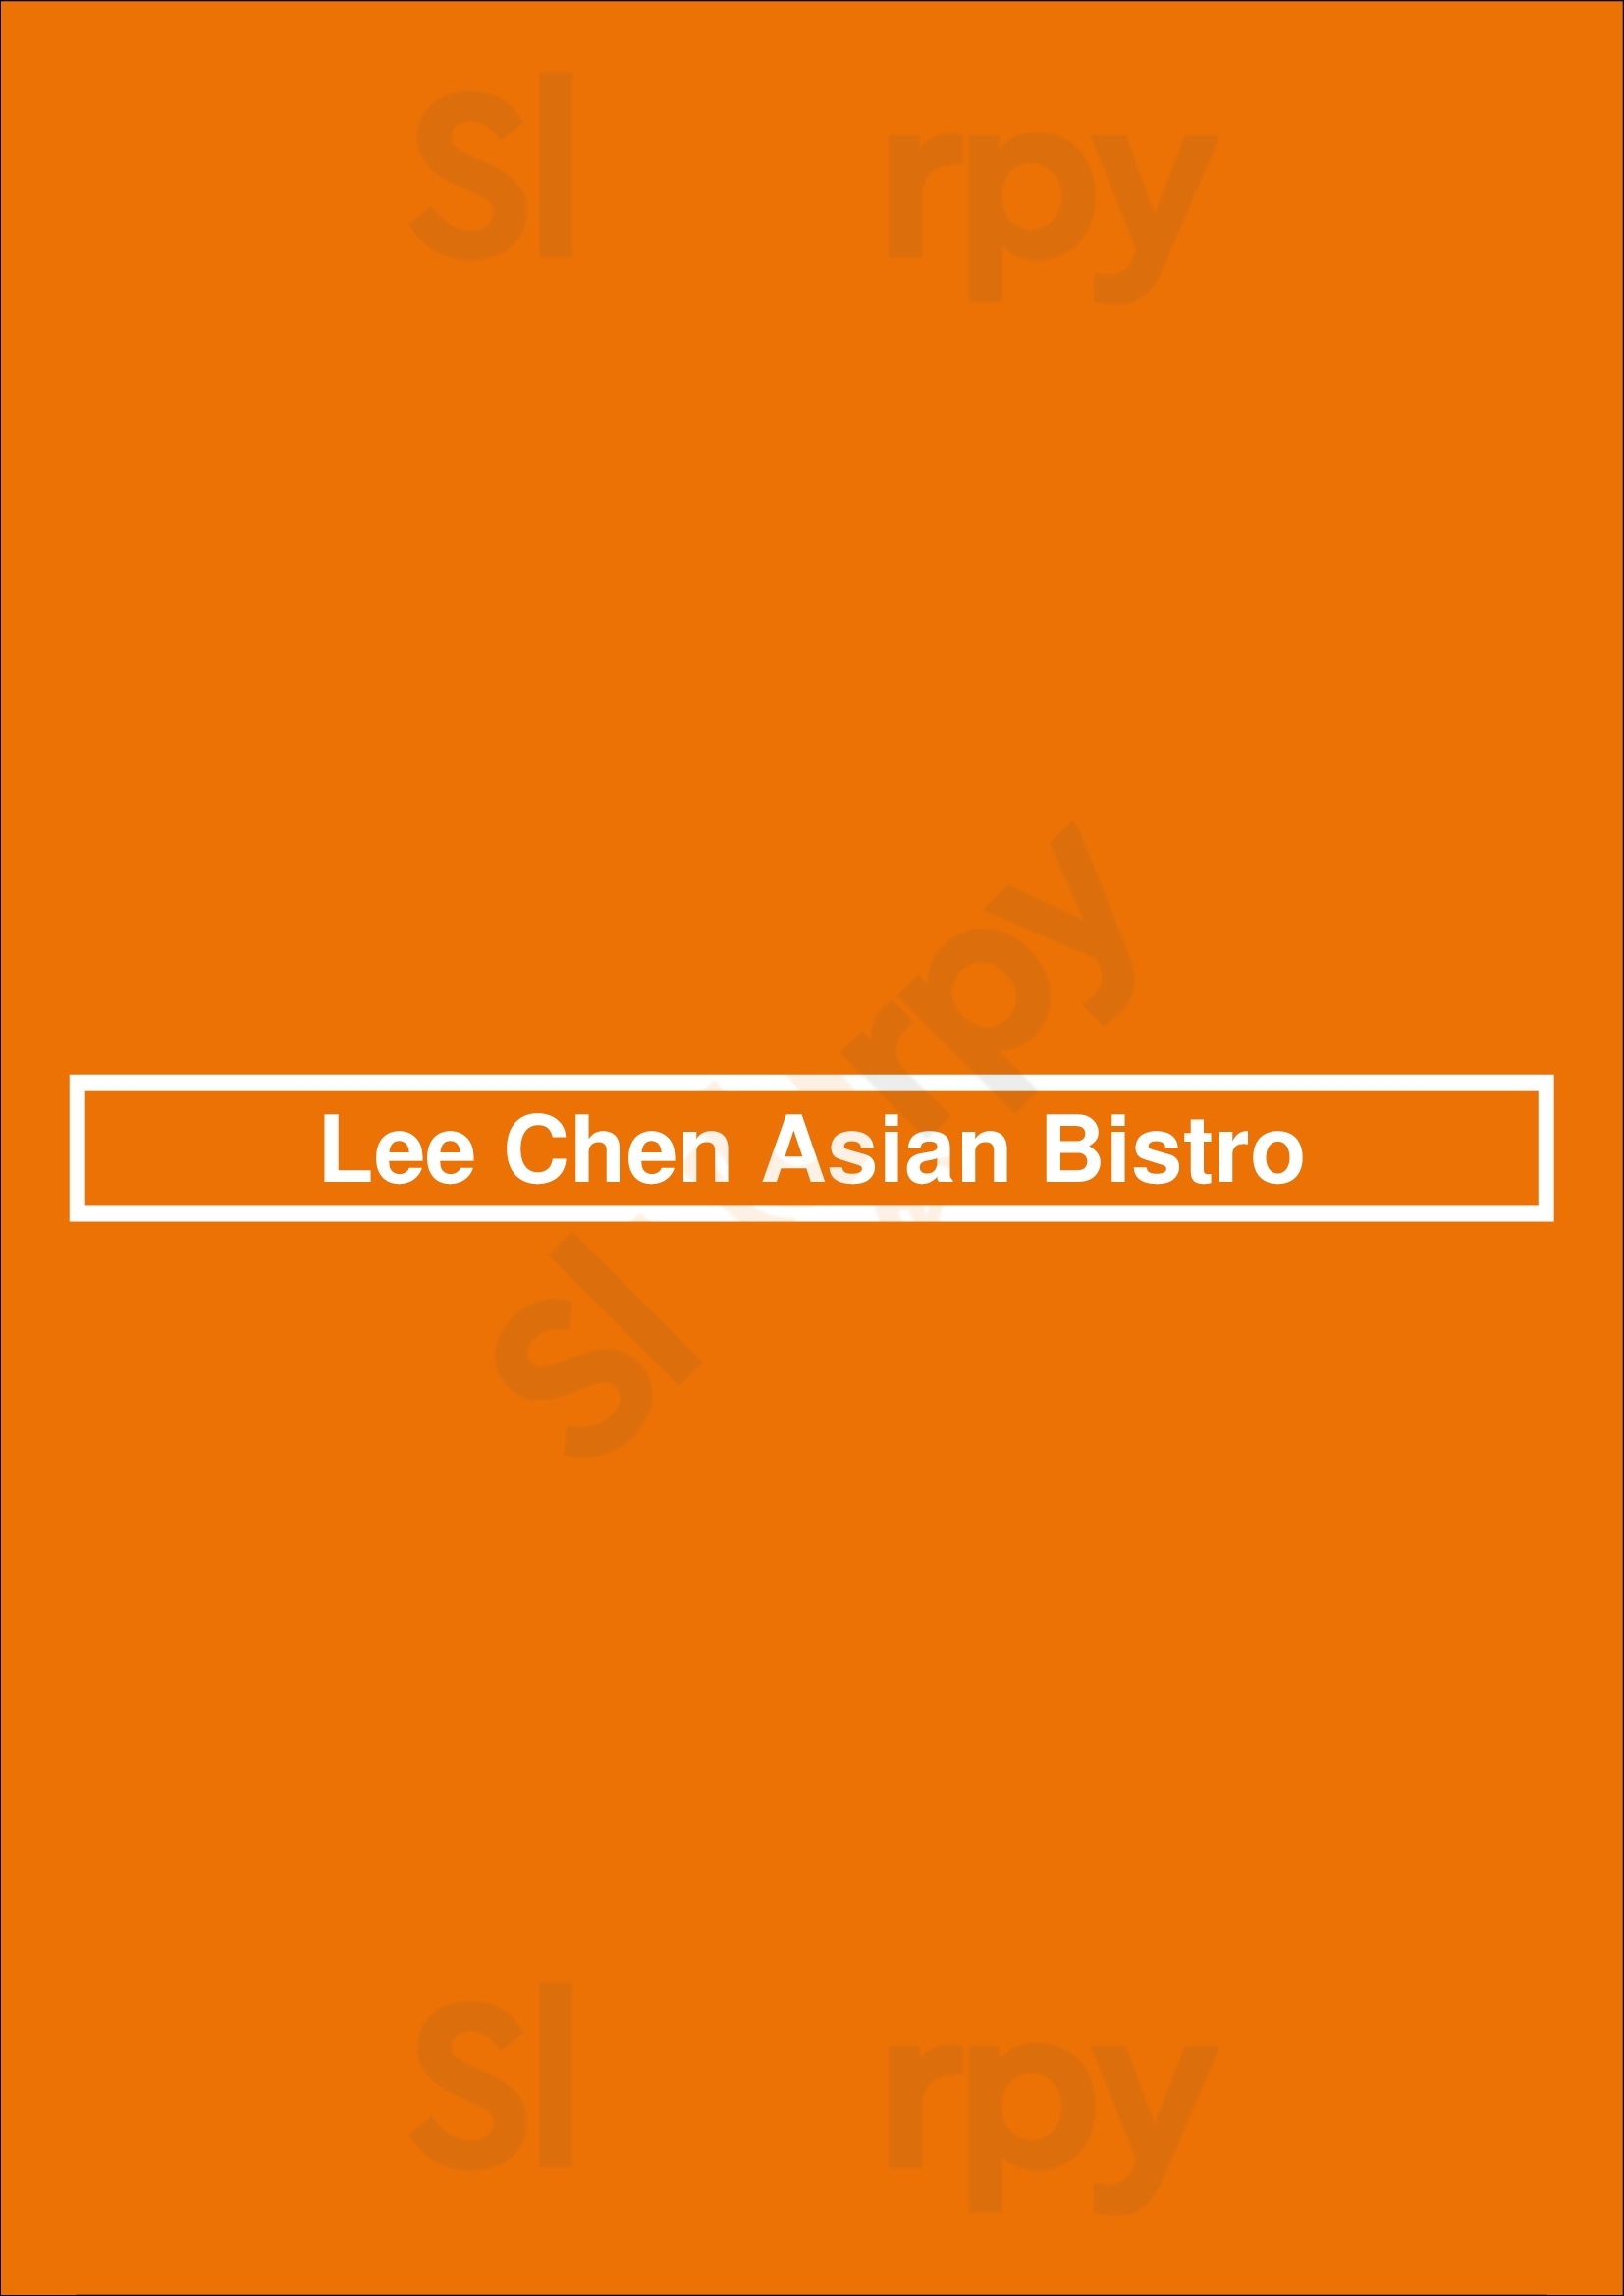 Lee Chen Asian Bistro Aurora Menu - 1